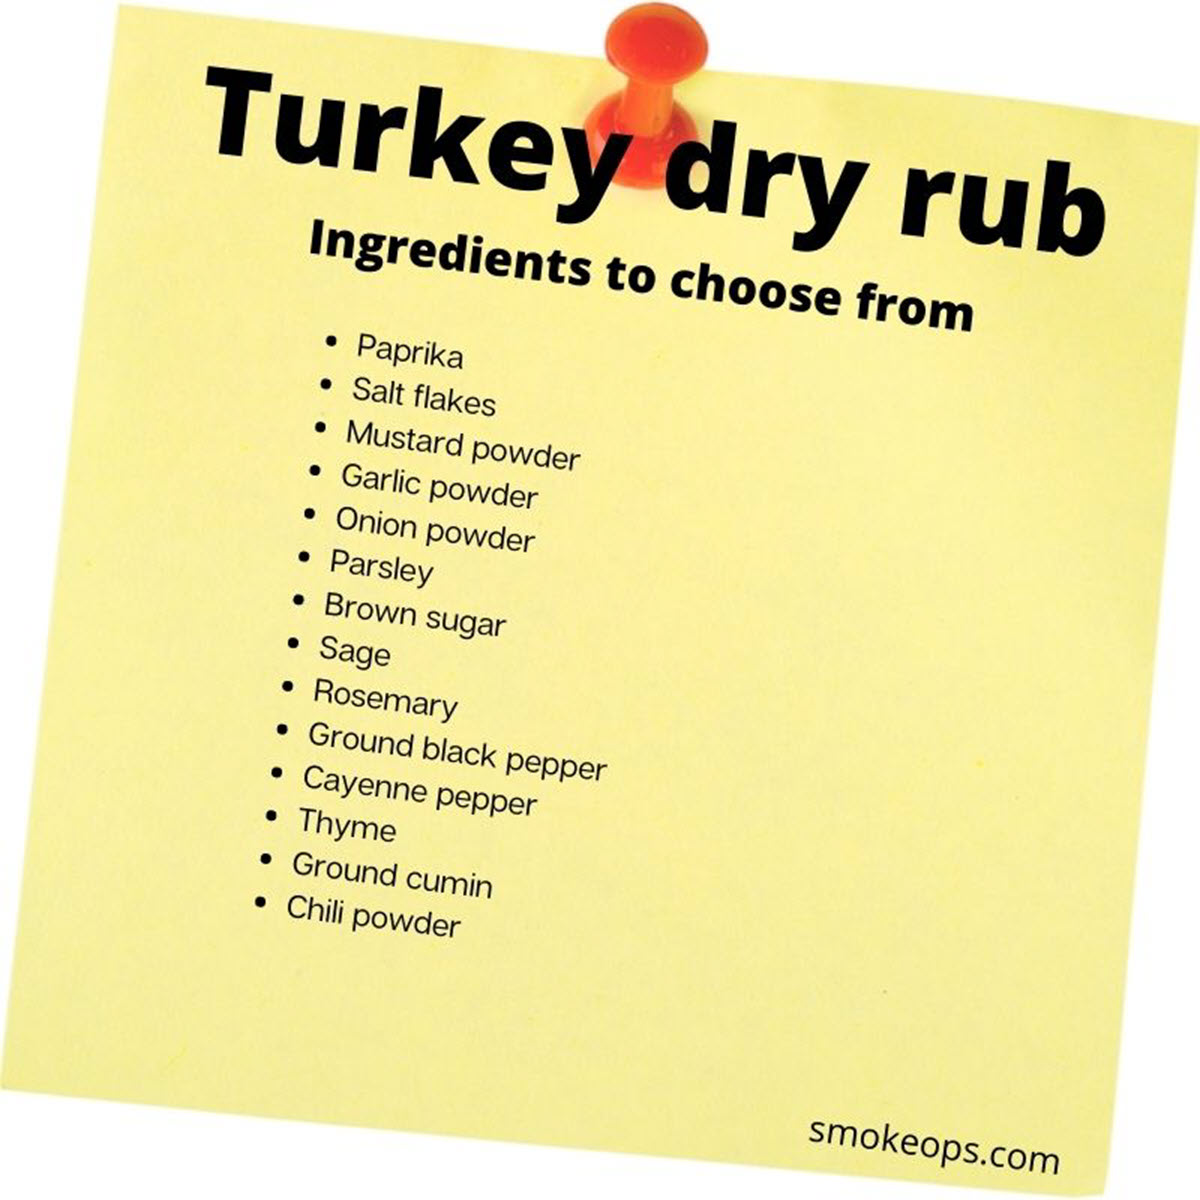 Smoked turkey - dry rub